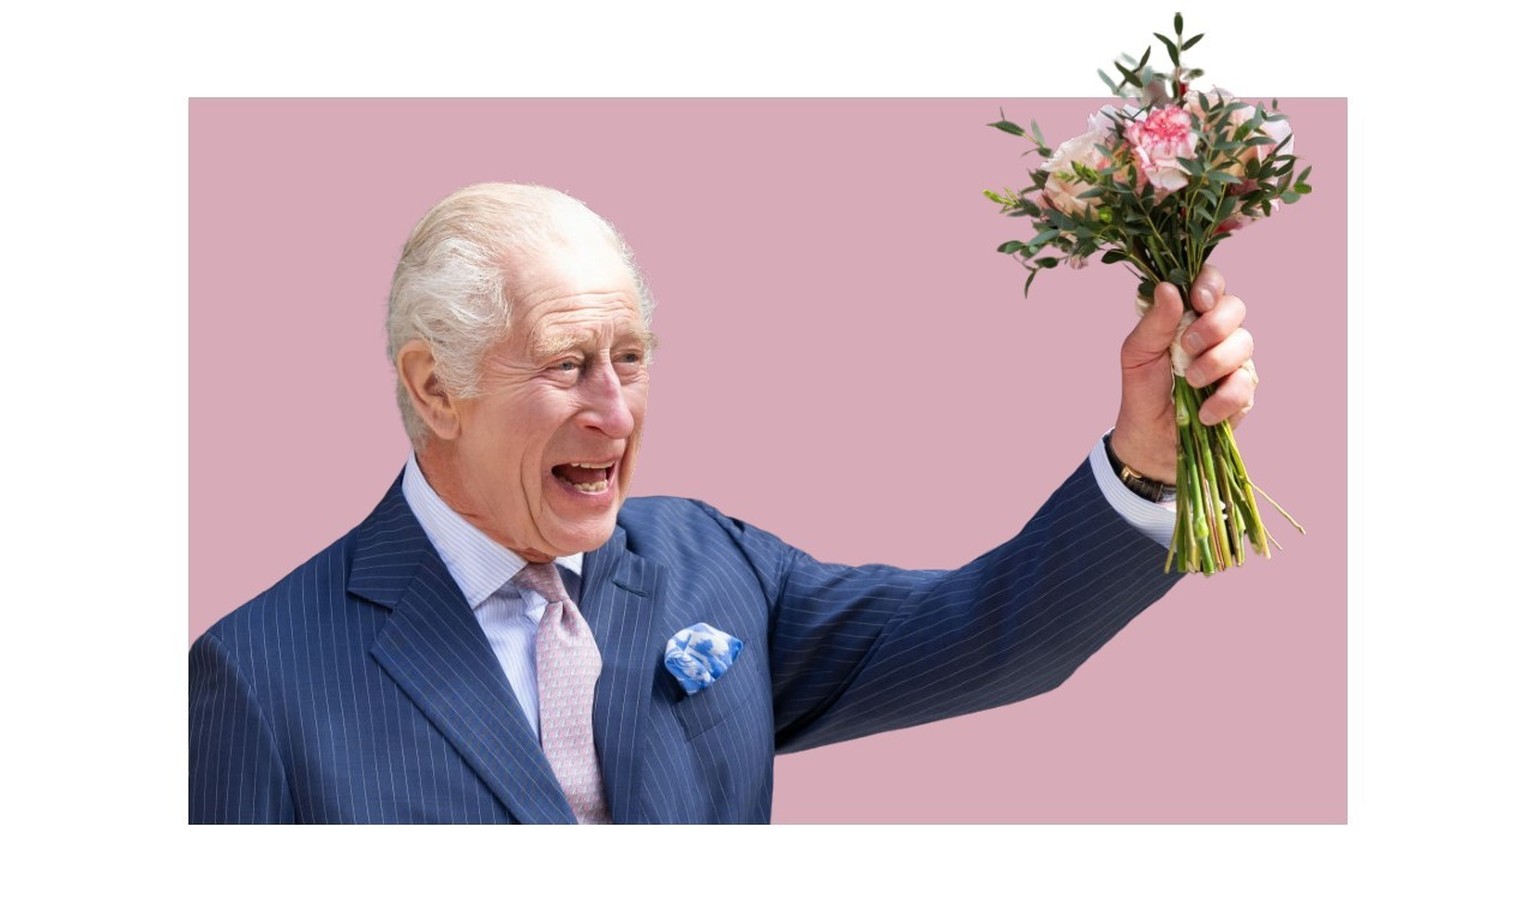 Le roi Charles, 75 ans, détendu et souriant, était accompagné de la reine Camilla, 76 ans, a accompli sa première visite officielle, symbolique et très scrutée.